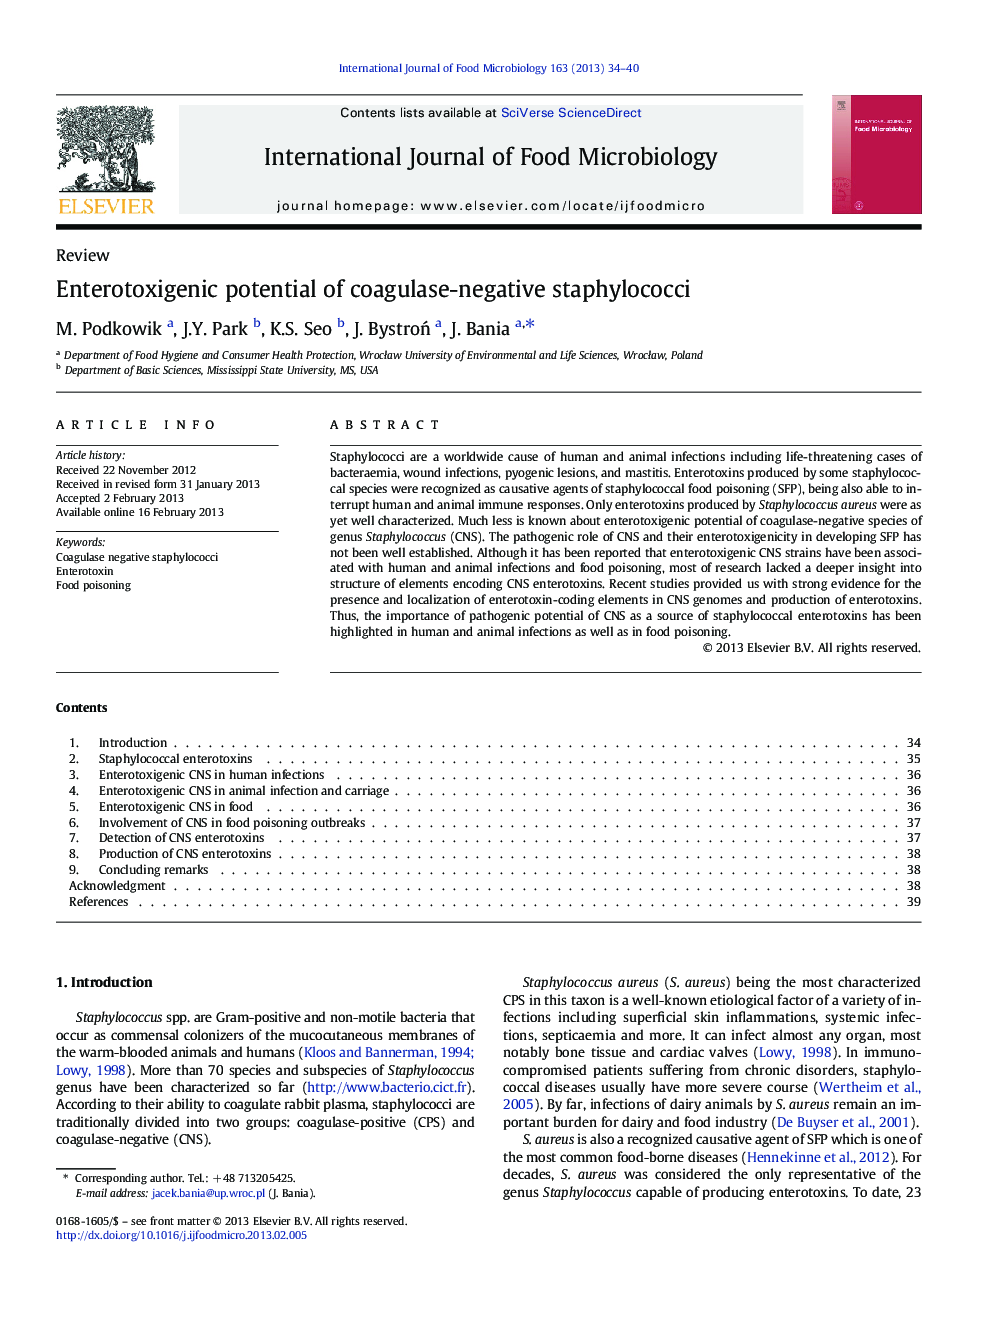 Enterotoxigenic potential of coagulase-negative staphylococci